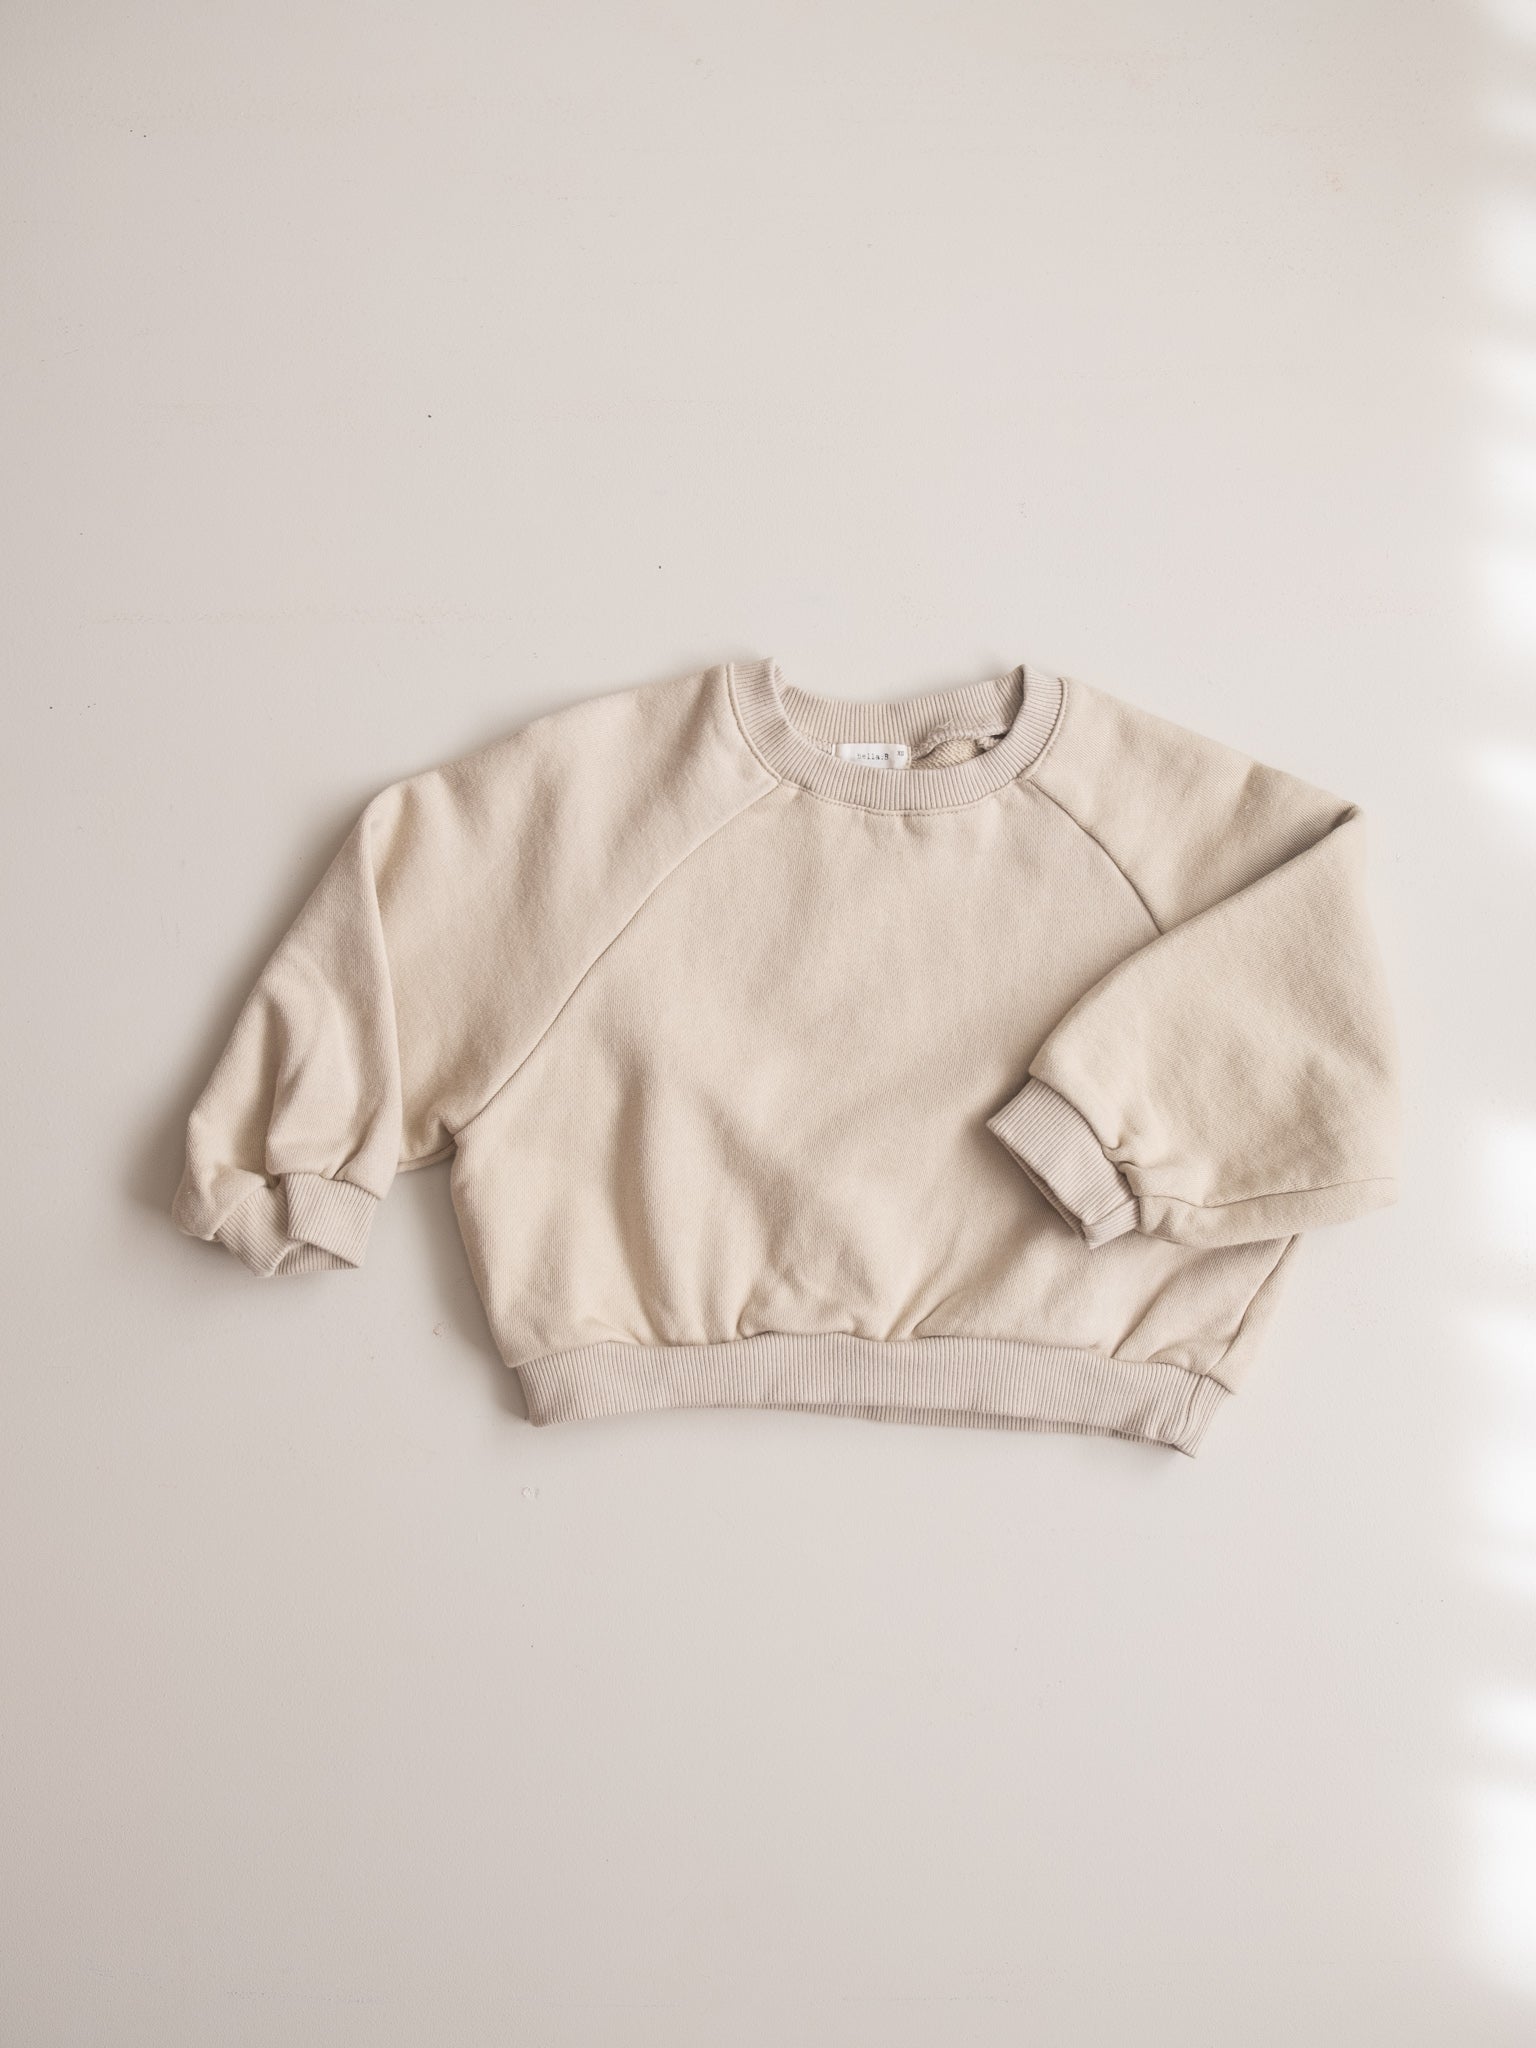 Common sweatshirt no.3 - Beige